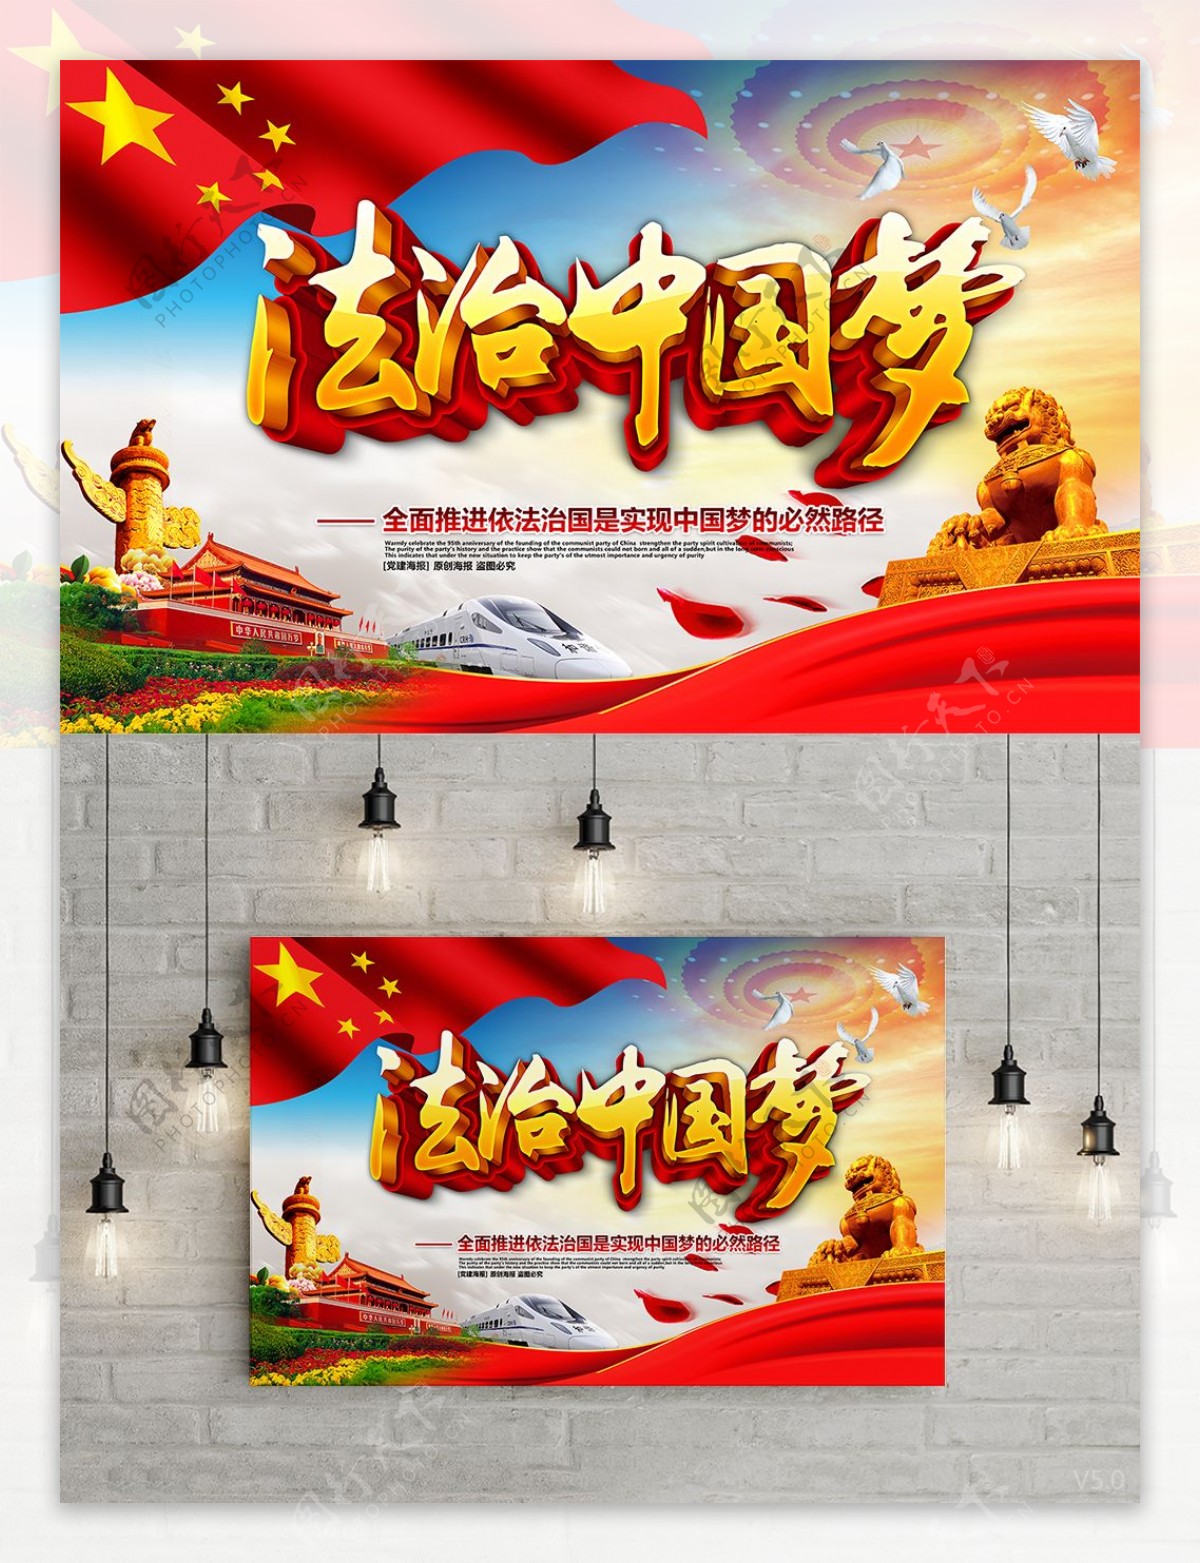 精美大气法治中国梦中国梦党建主题海报设计